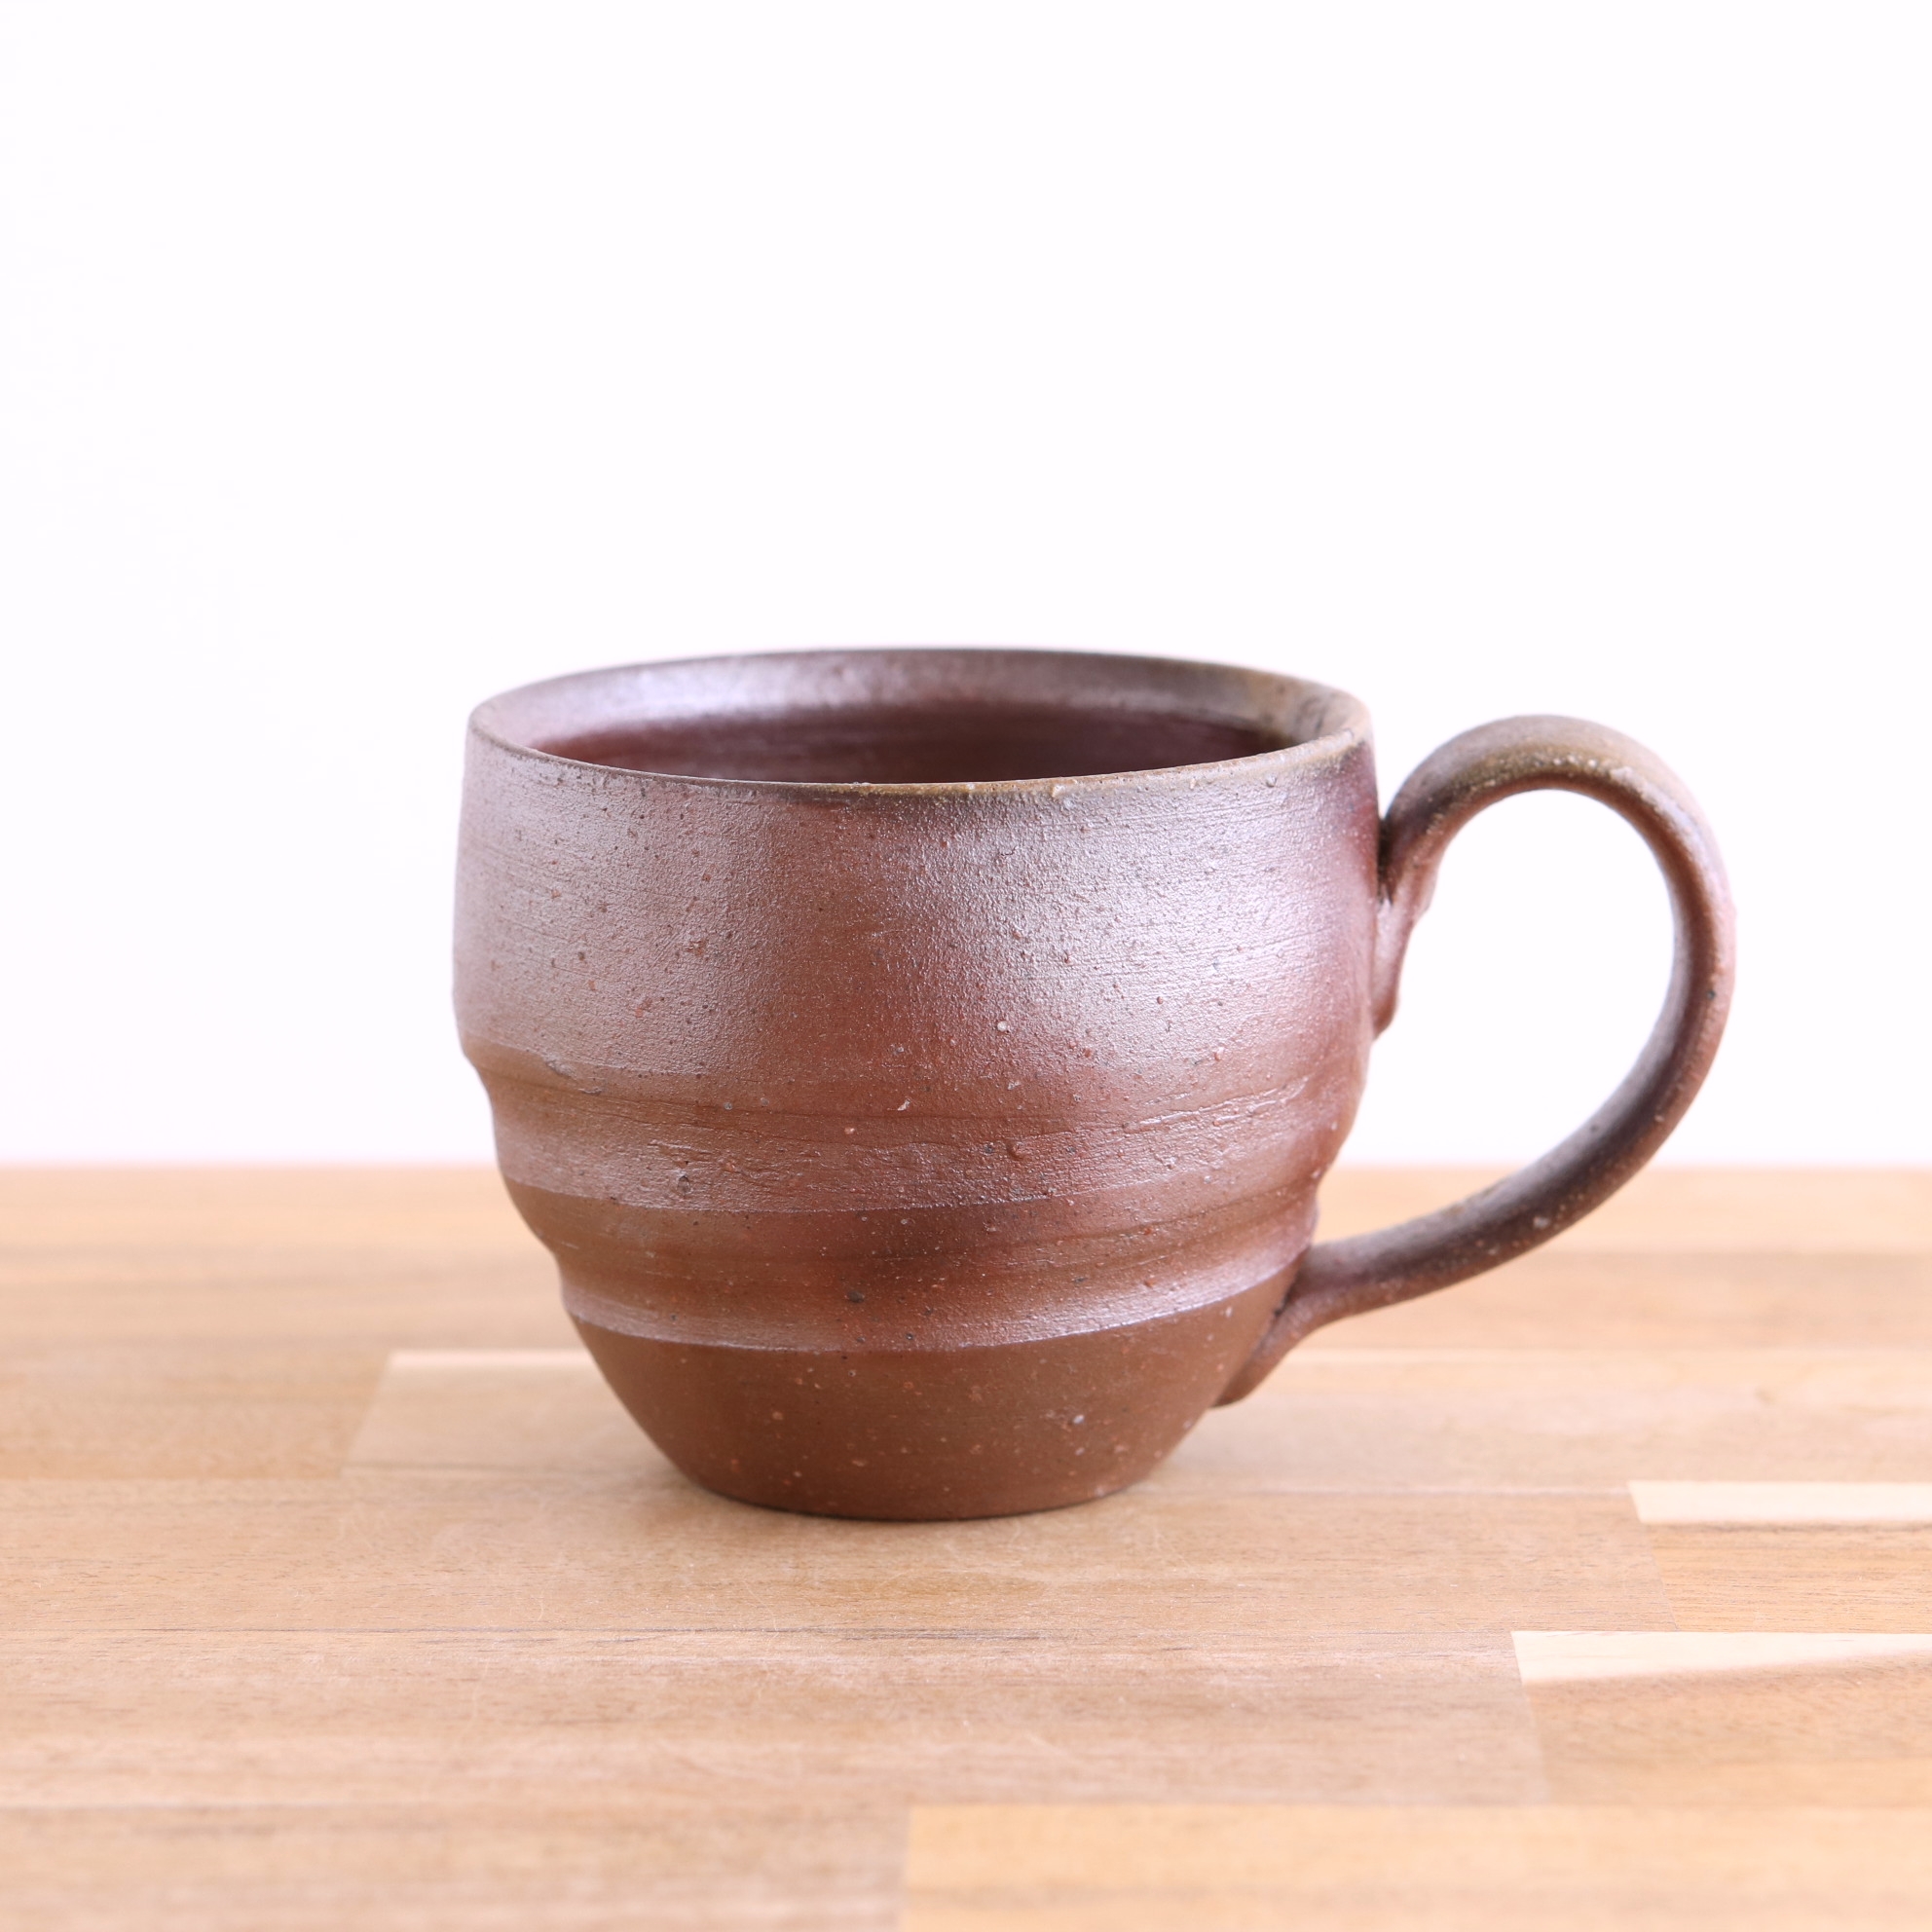 備前焼 コーヒーカップ A 陶器 マグカップ コップ Iichi ハンドメイド クラフト作品 手仕事品の通販